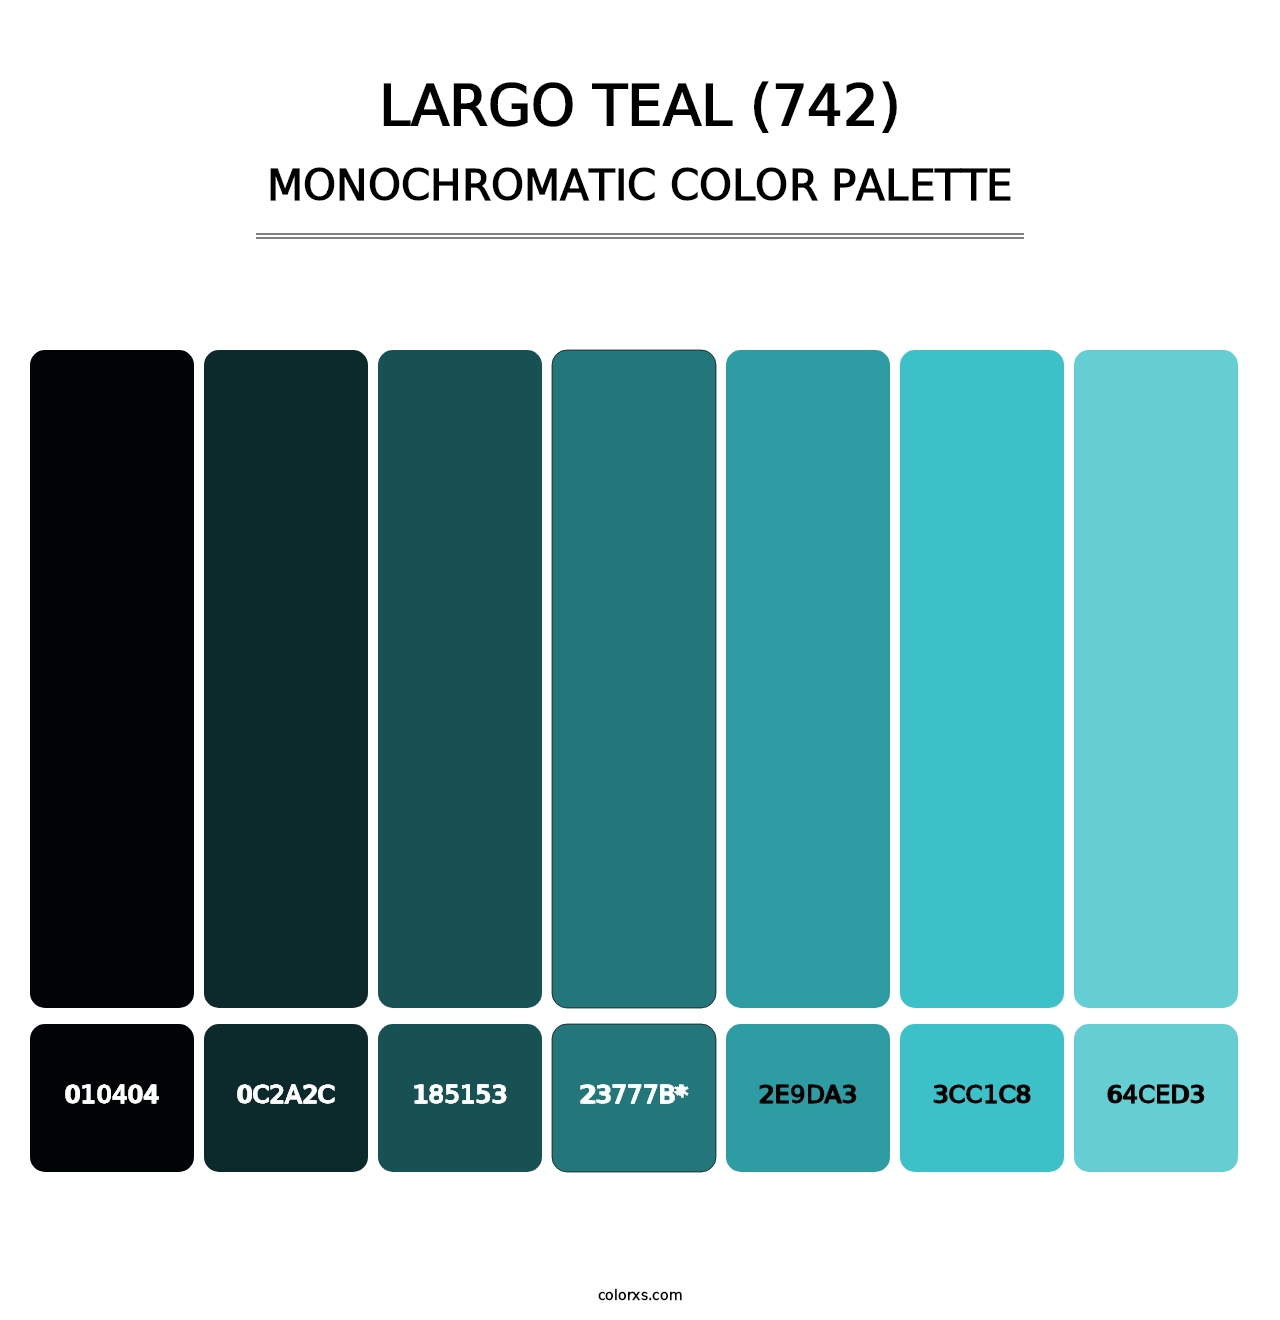 Largo Teal (742) - Monochromatic Color Palette